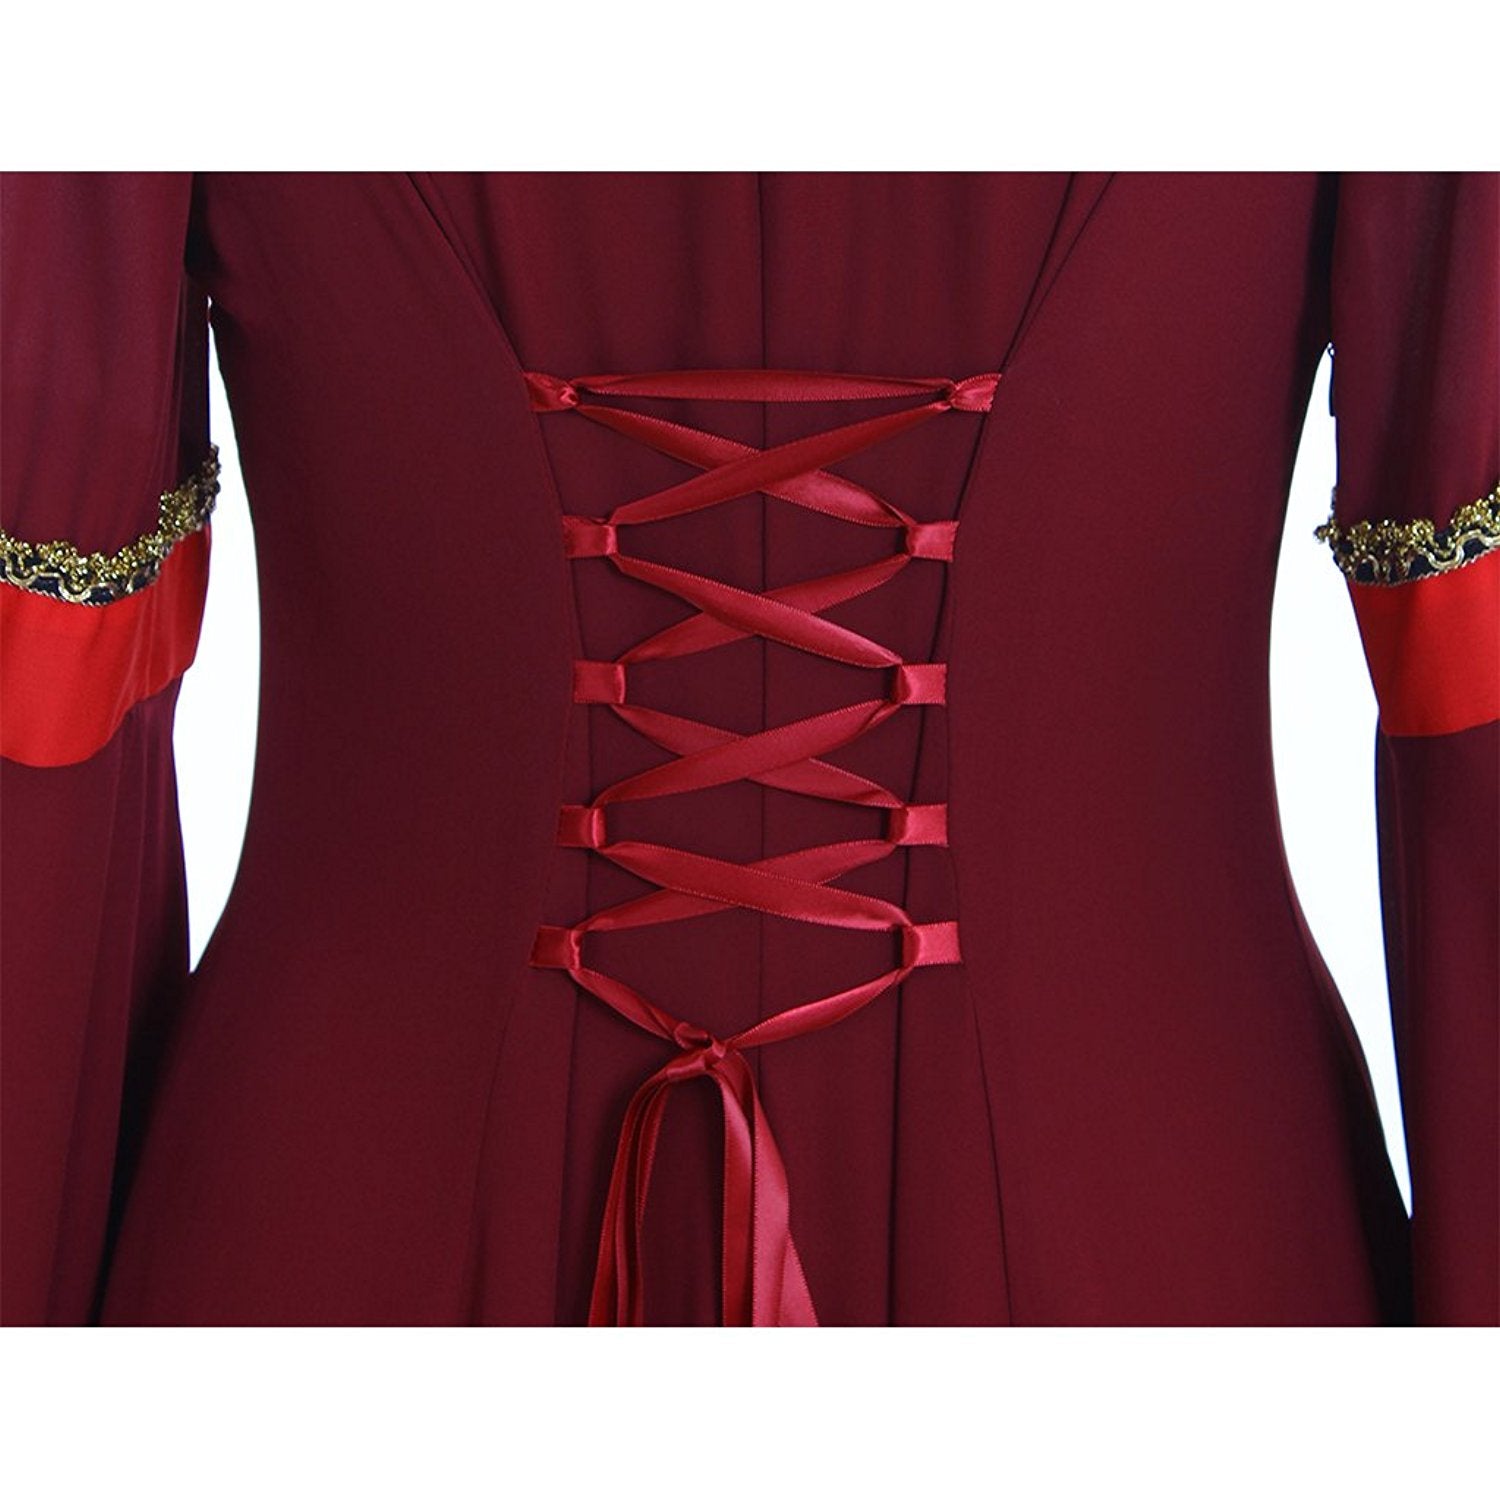 Womans Renaissance Dress Victorian Medieval Gothic Costume